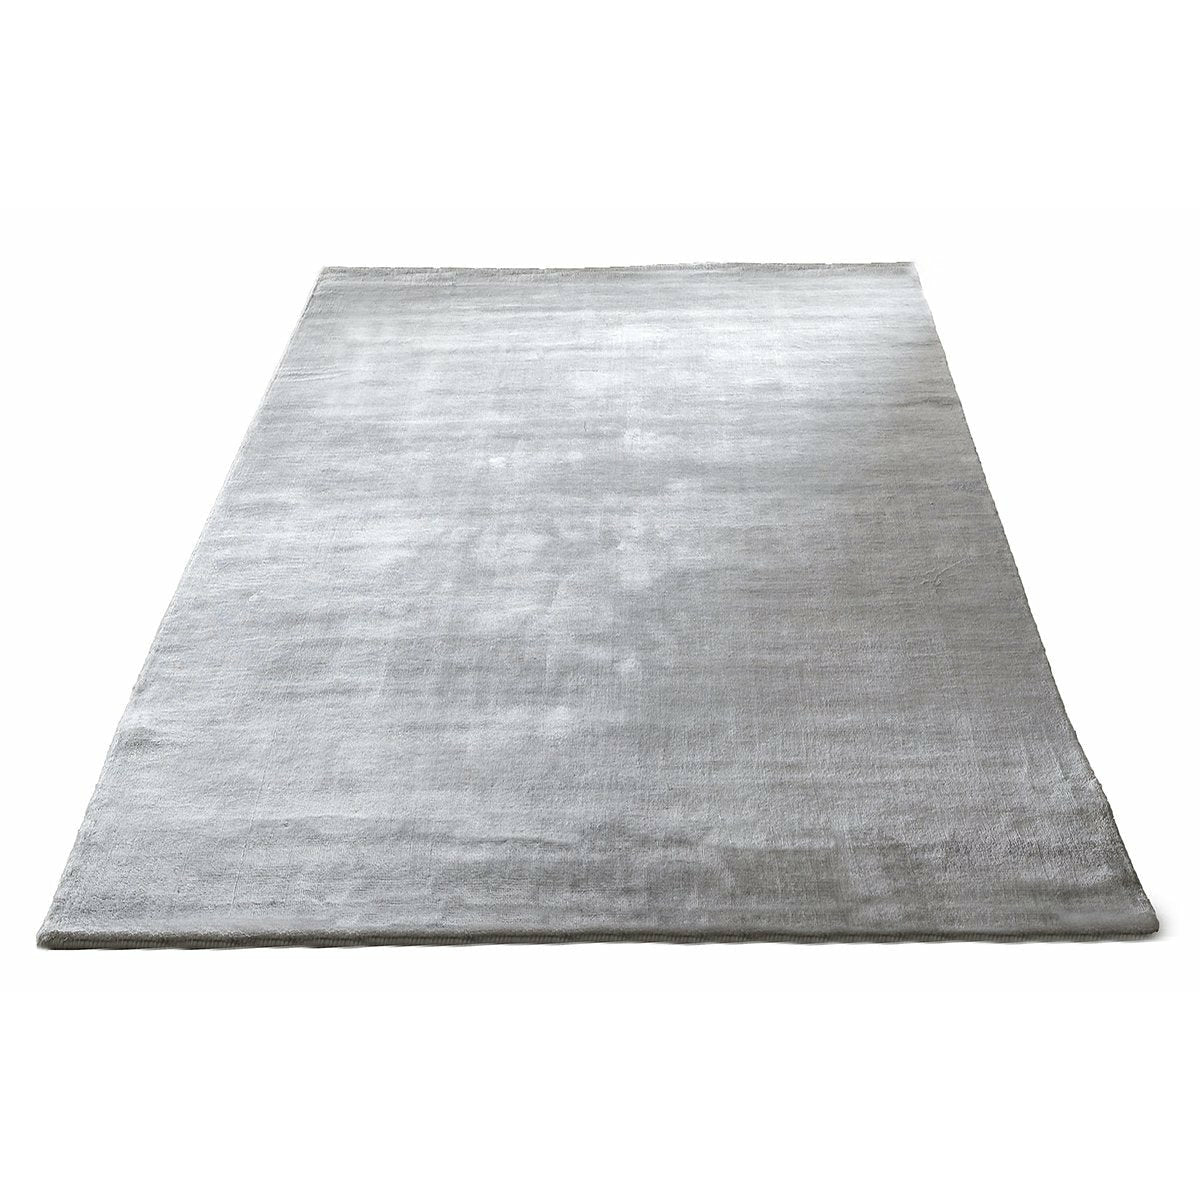 Massimo Bamboo tapis gris clair, 250x300 cm